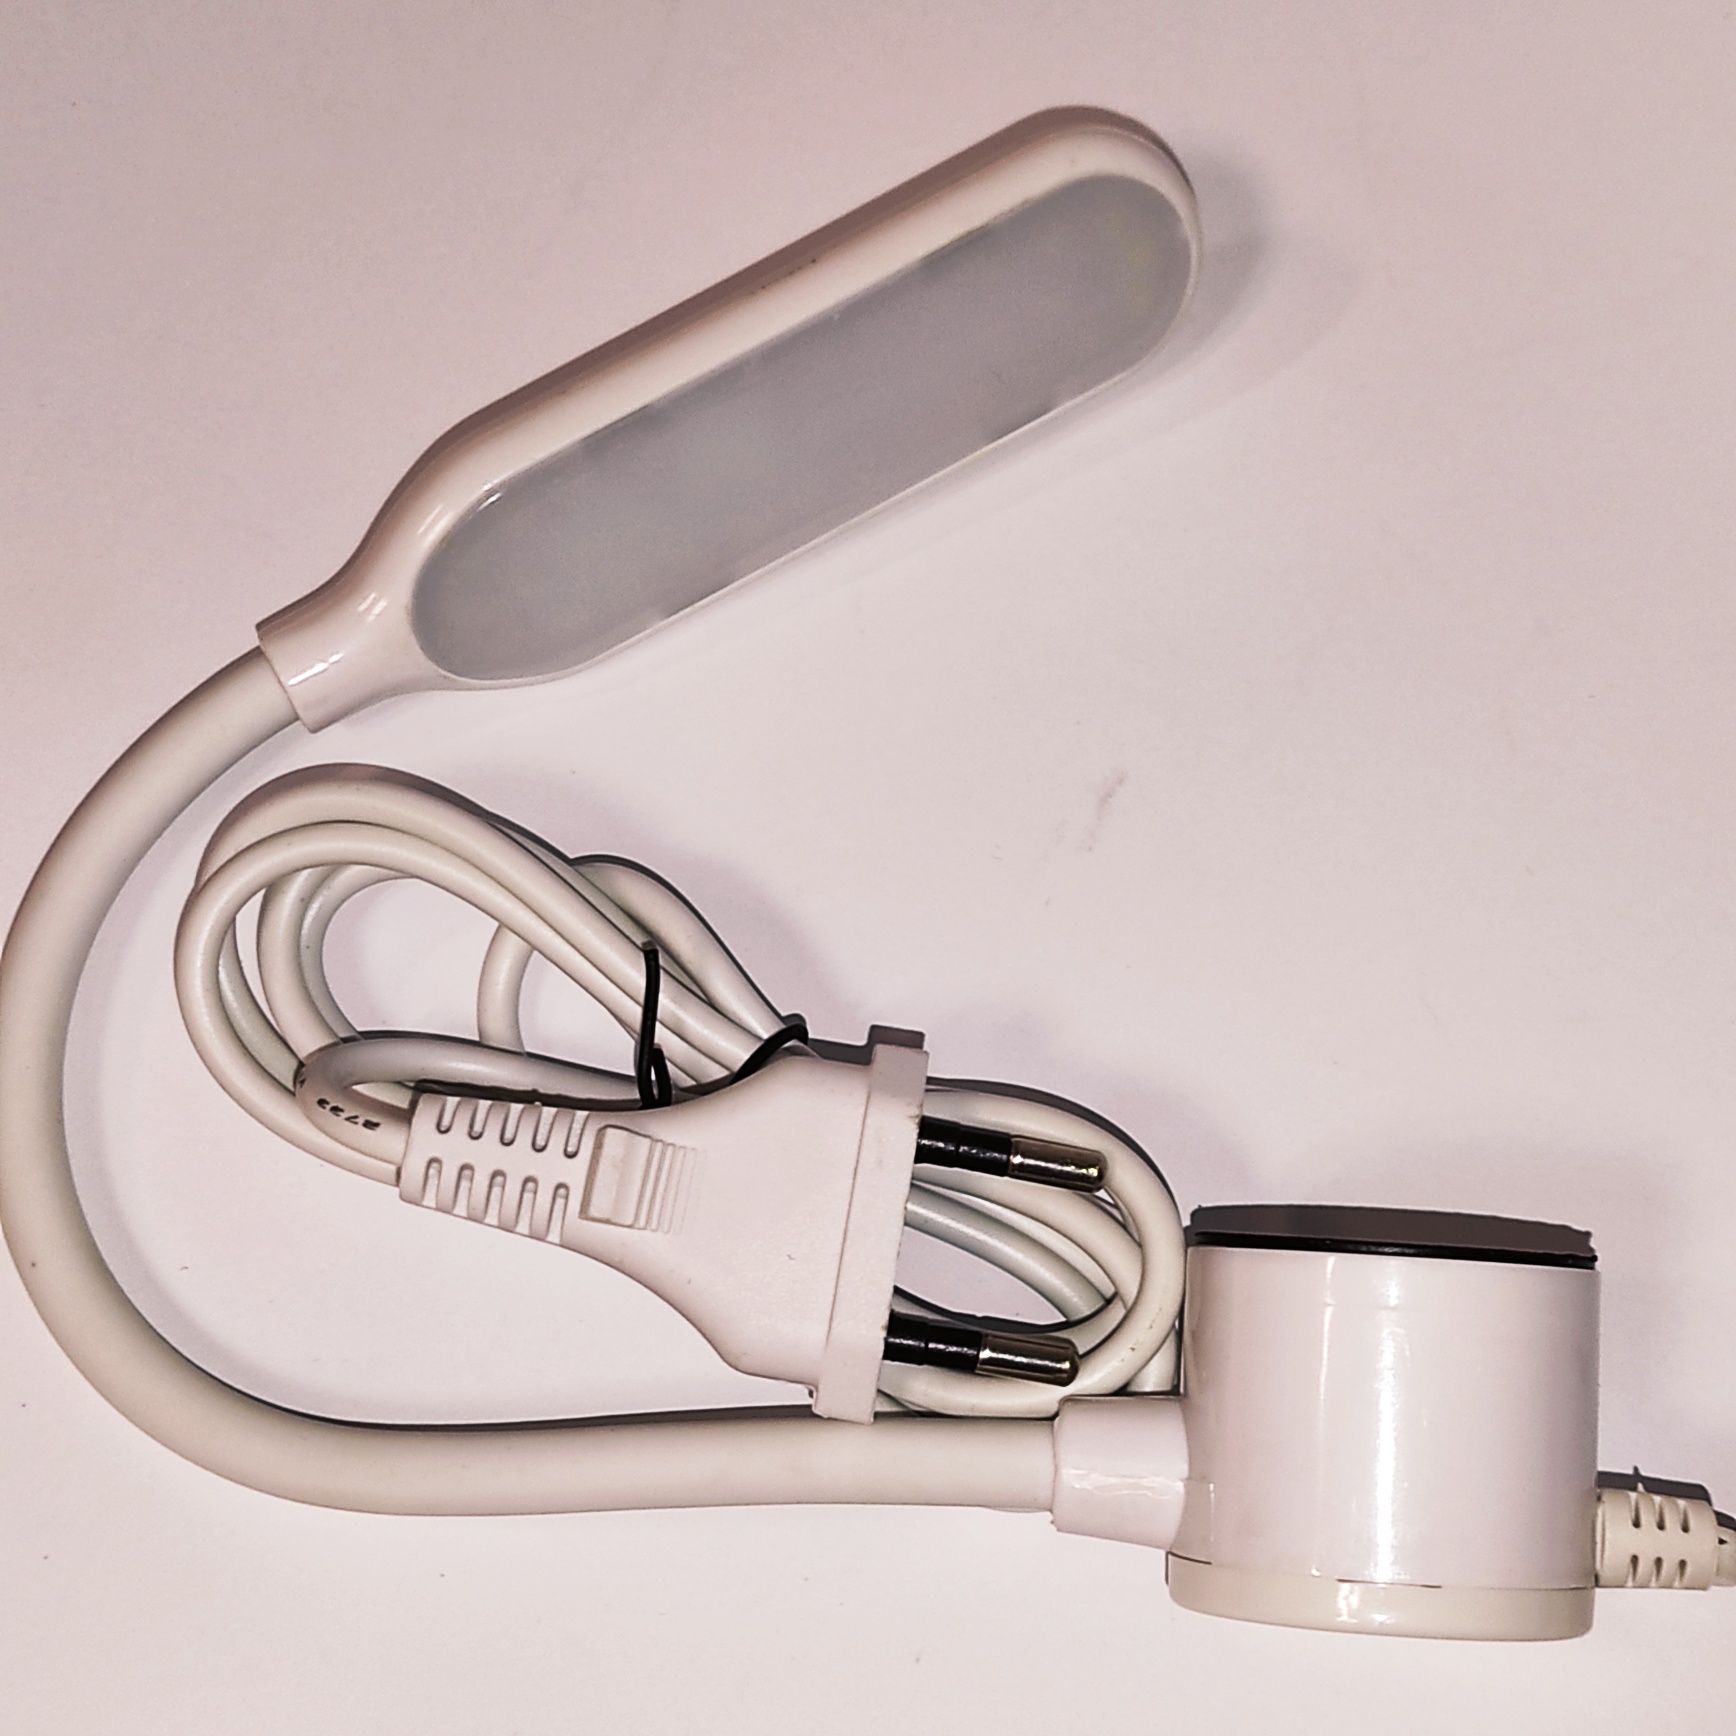 Світильник - лампа енергозберігаючий на магніті для швейних машин, ста